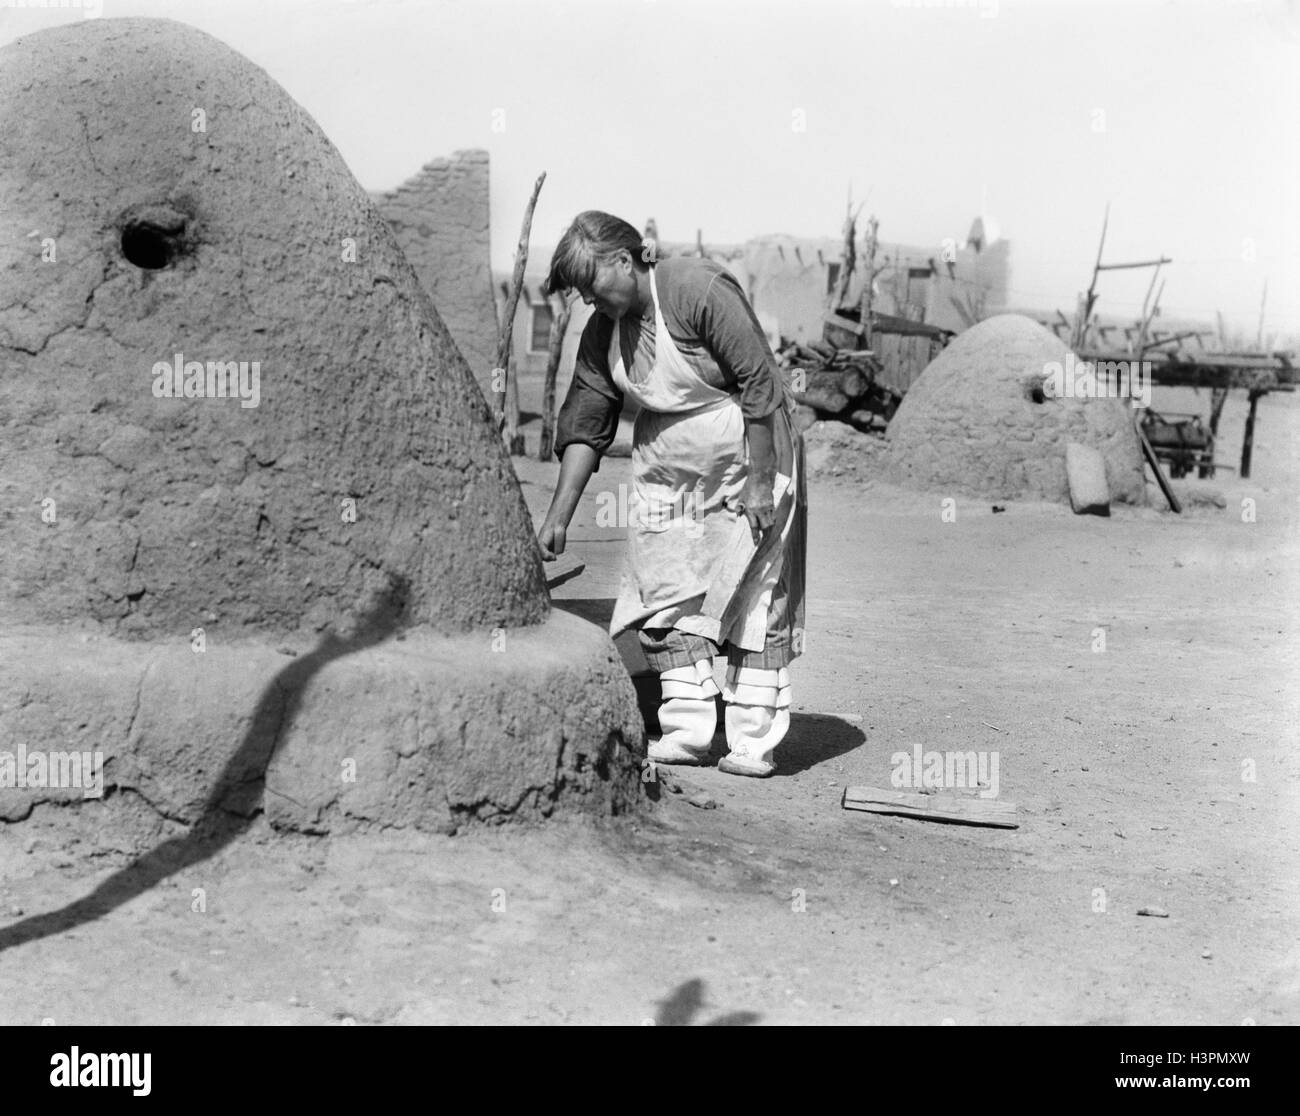 1930s NATIVE AMERICAN INDIAN WOMAN BAKING BREAD IN OUTDOOR HORNO OVEN SANTA CLARA PUEBLO NEW MEXICO USA Stock Photo